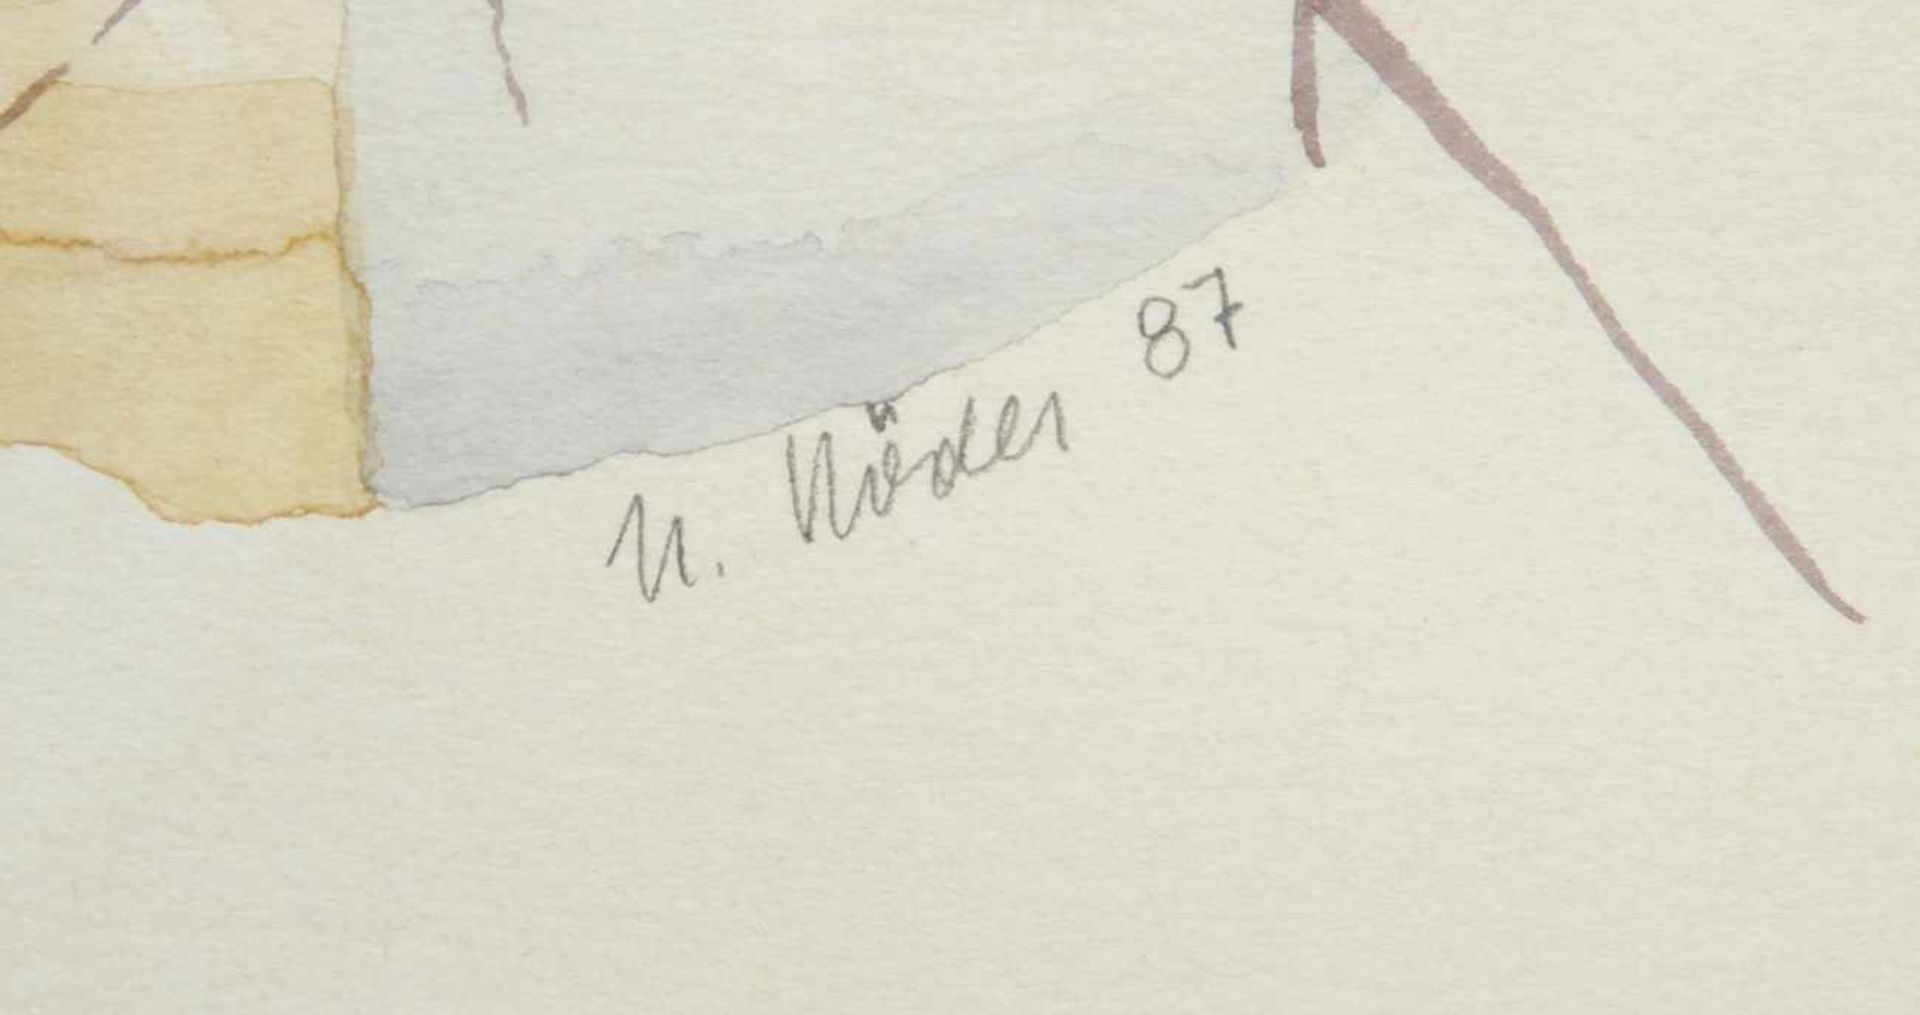 Röder, Maler 2. Hälfte 20. Jh. "Bäume", Aquarell, sign., dat. 1987, 42 x 31 cm - Bild 2 aus 2